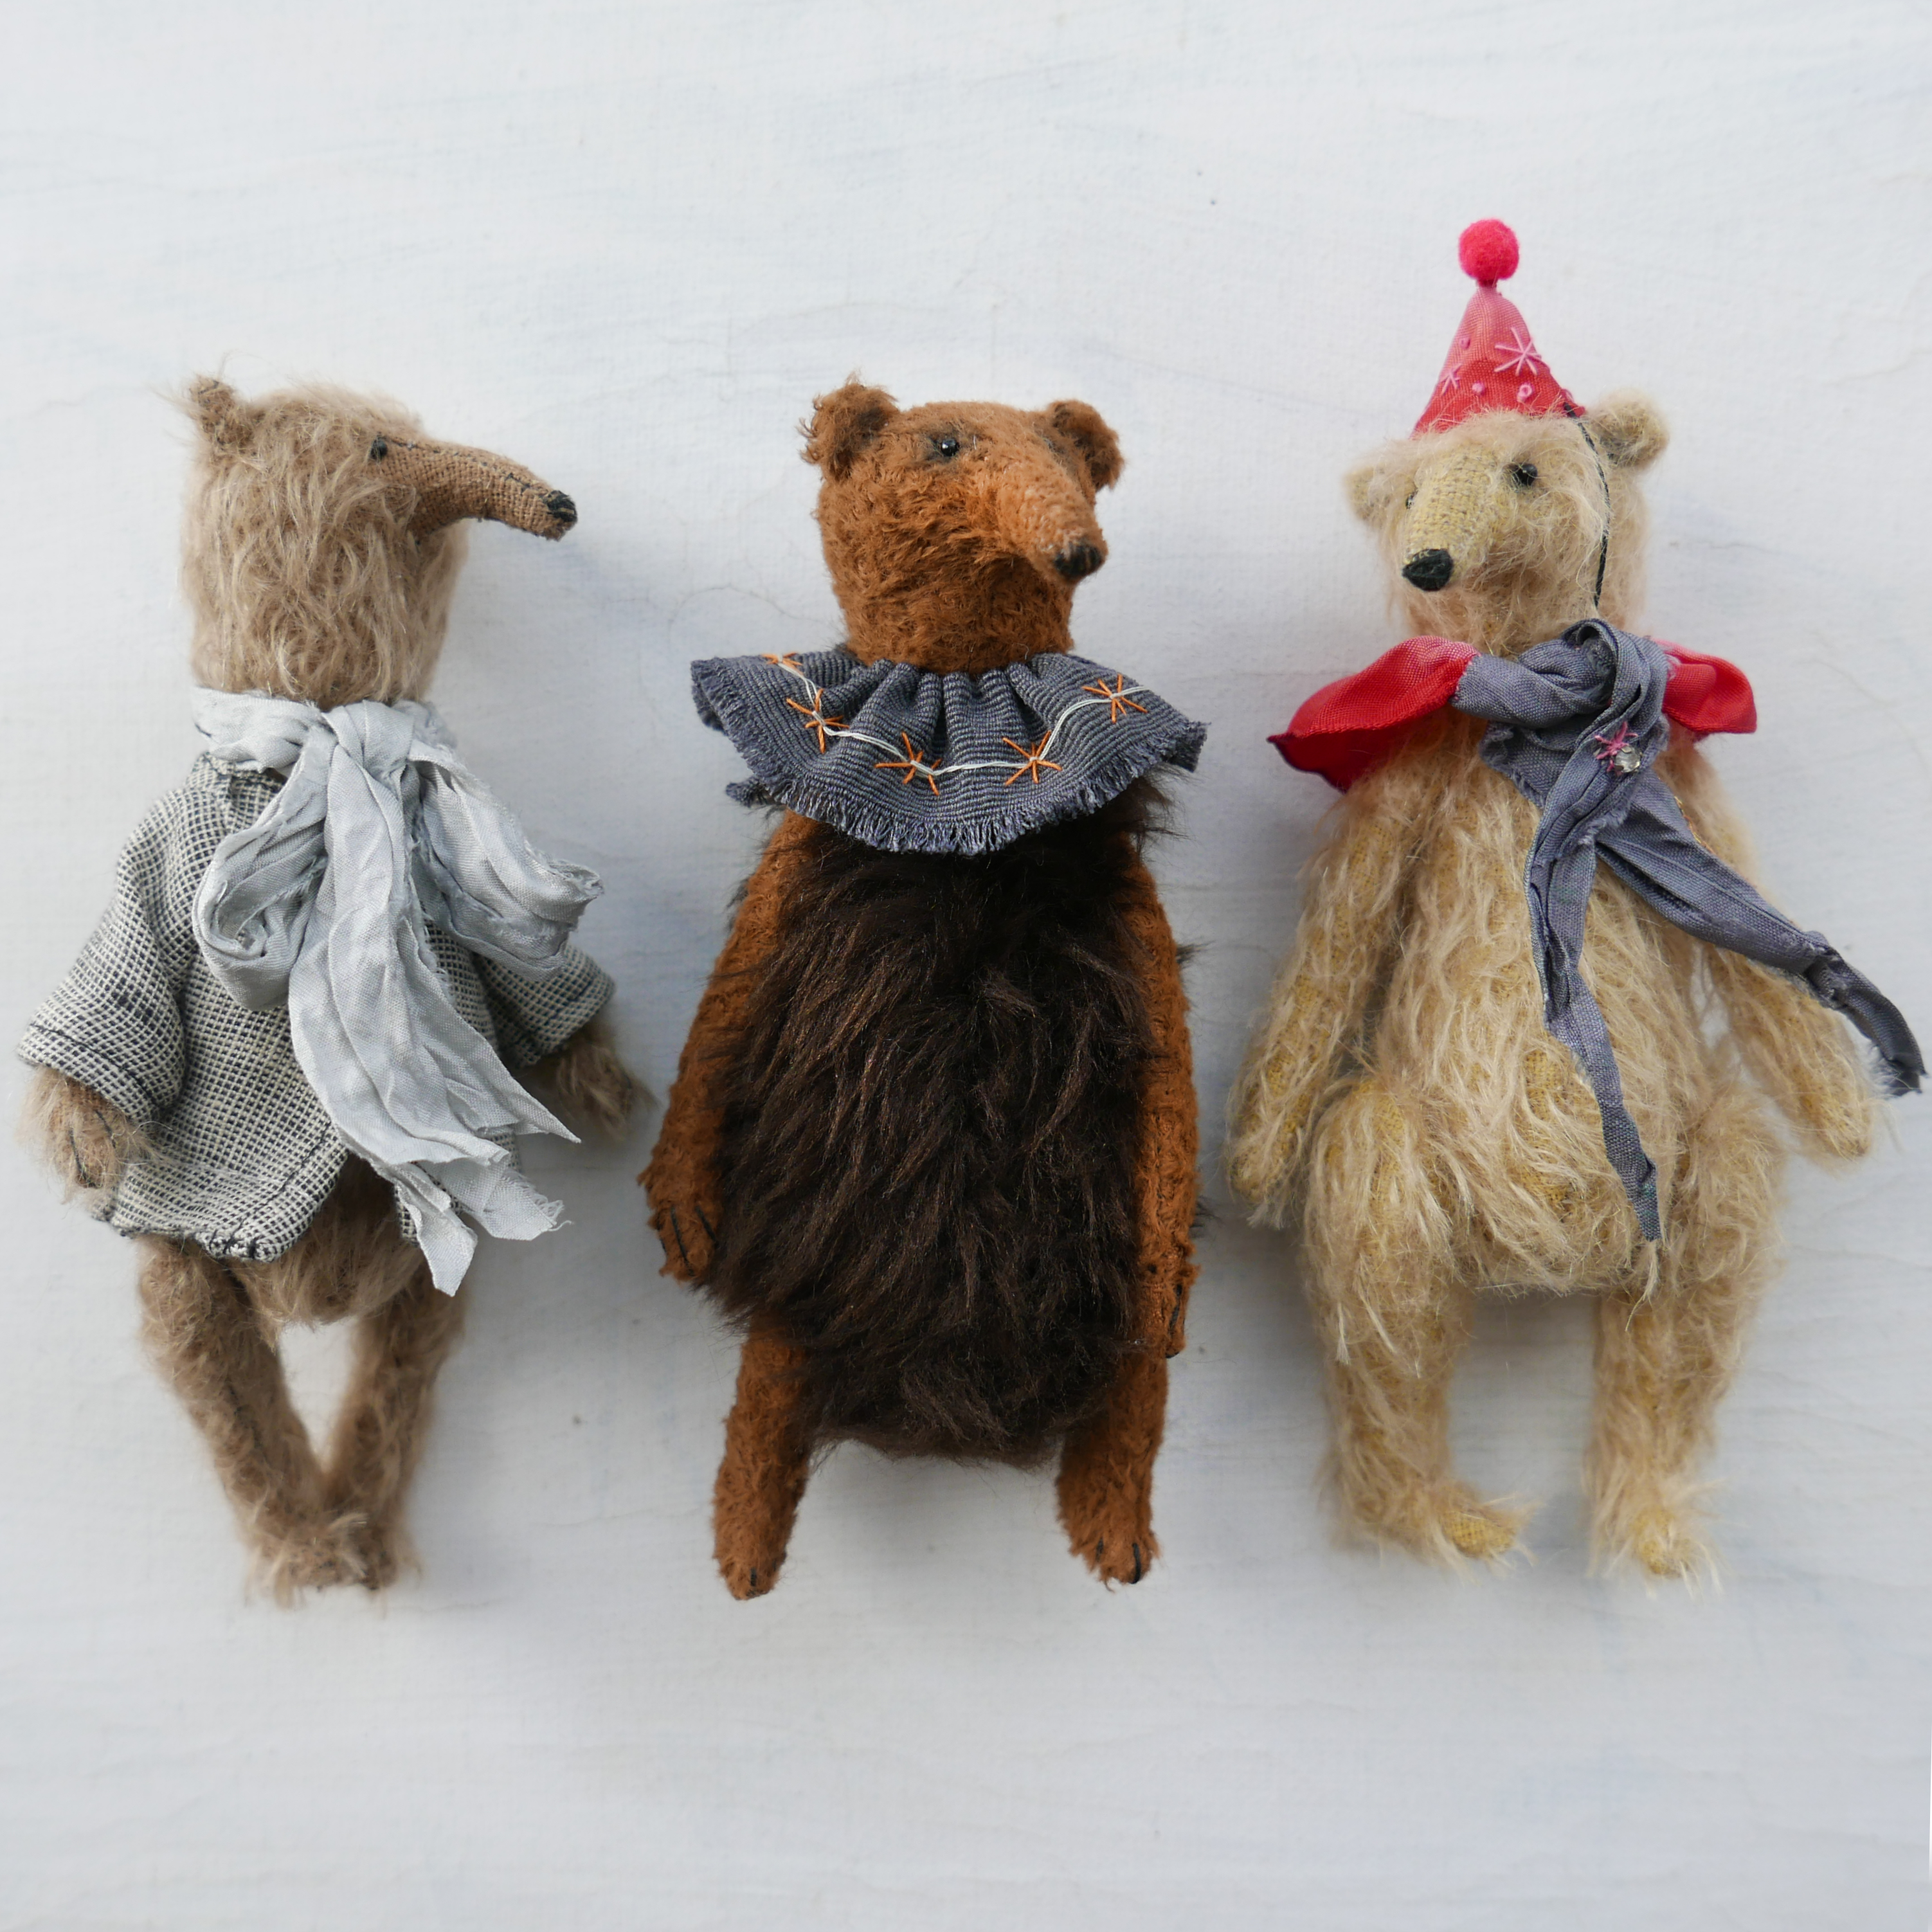 Trio of handmade bears by British maker modflowers